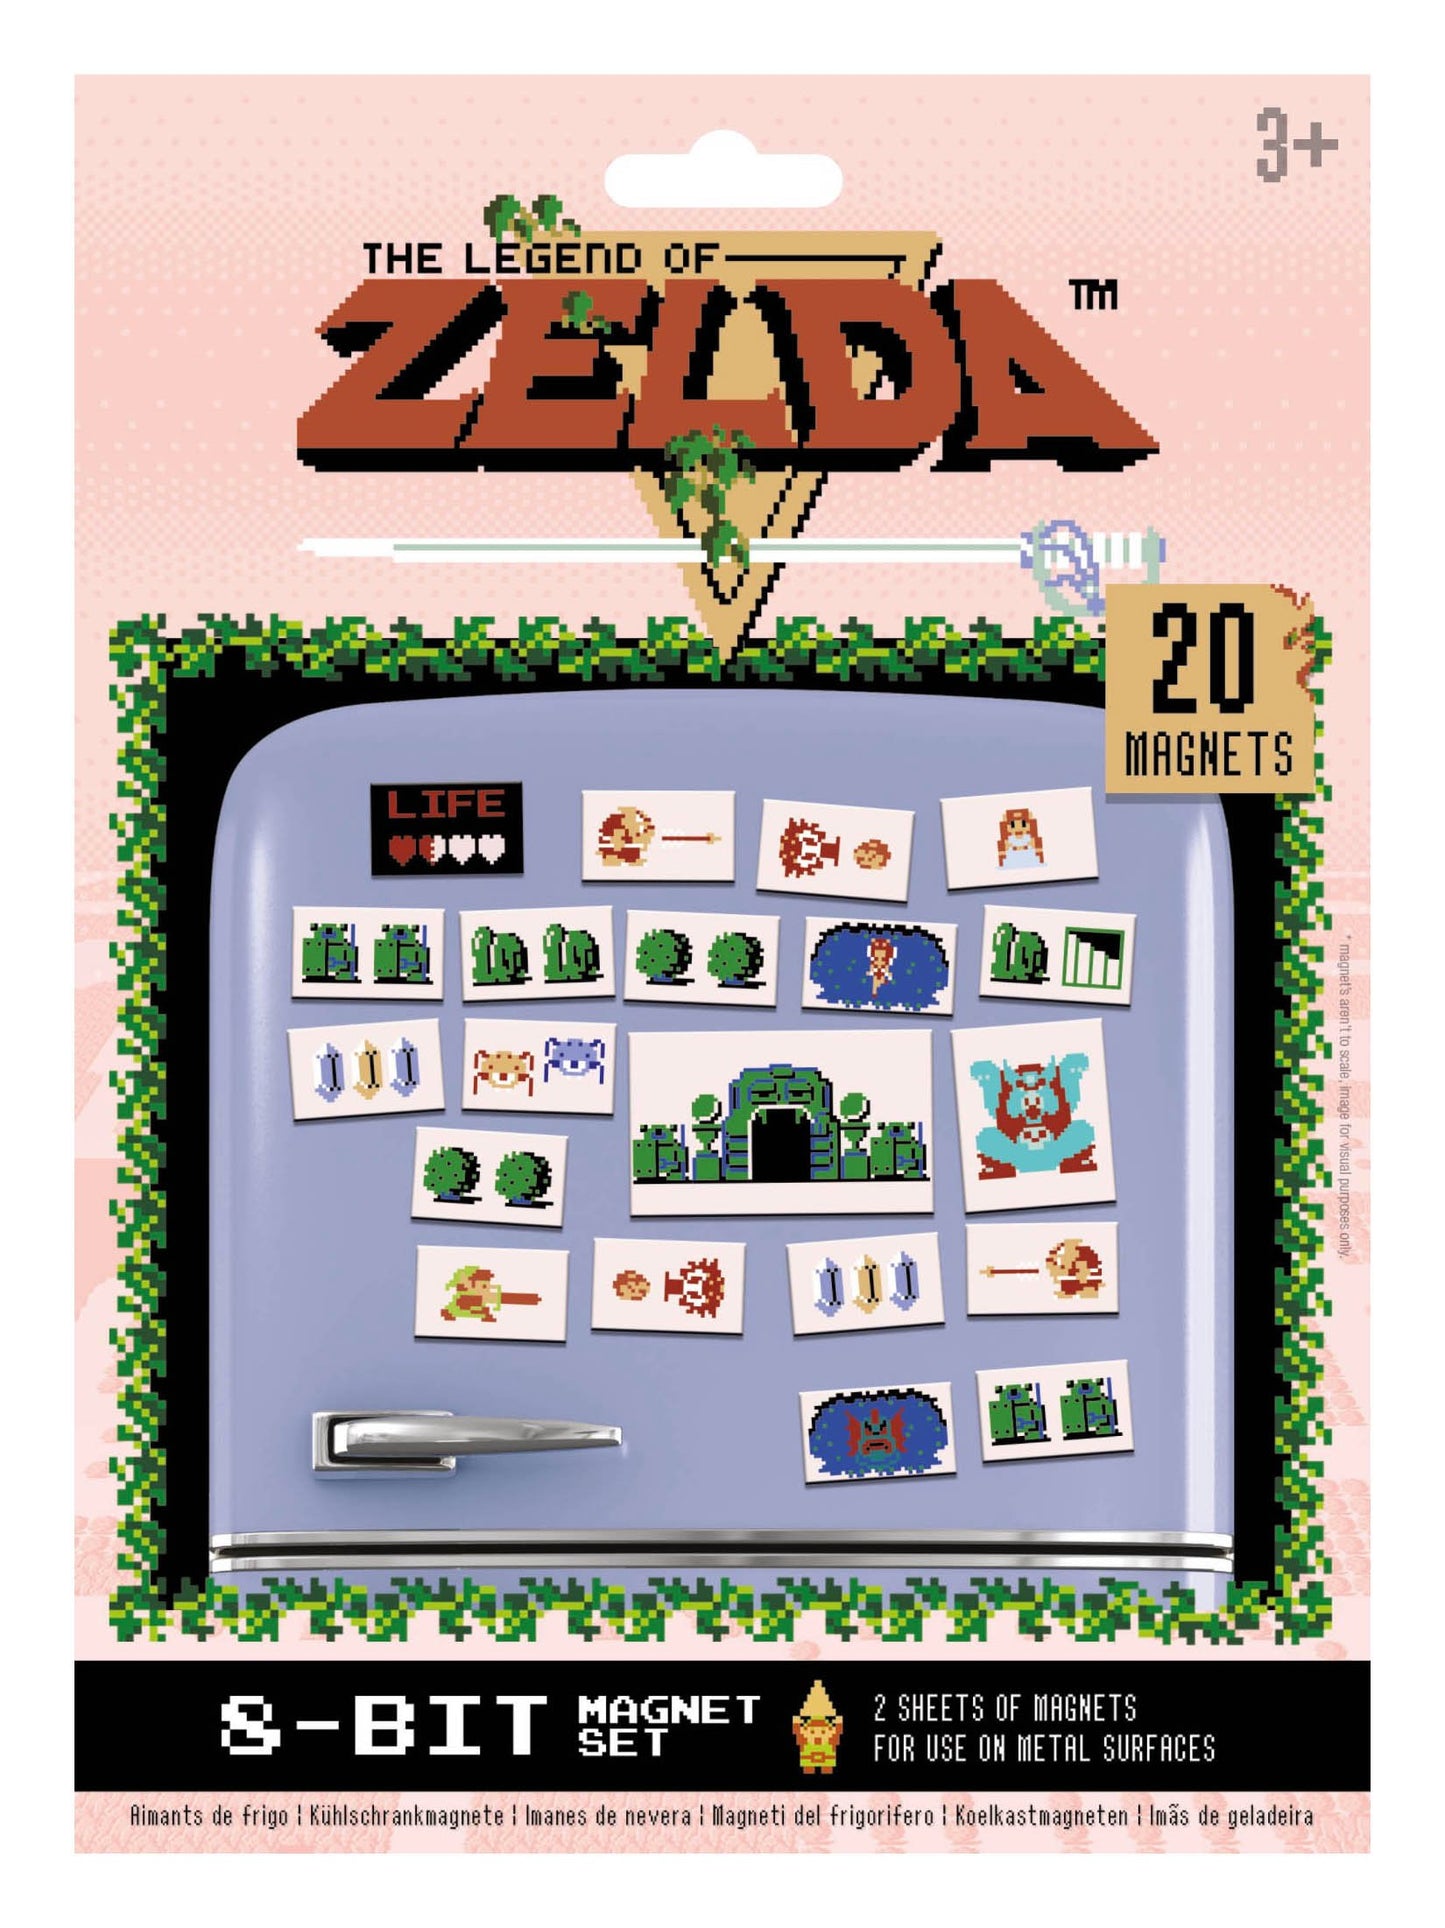 The Legend of Zelda - Retro Magnet Pack